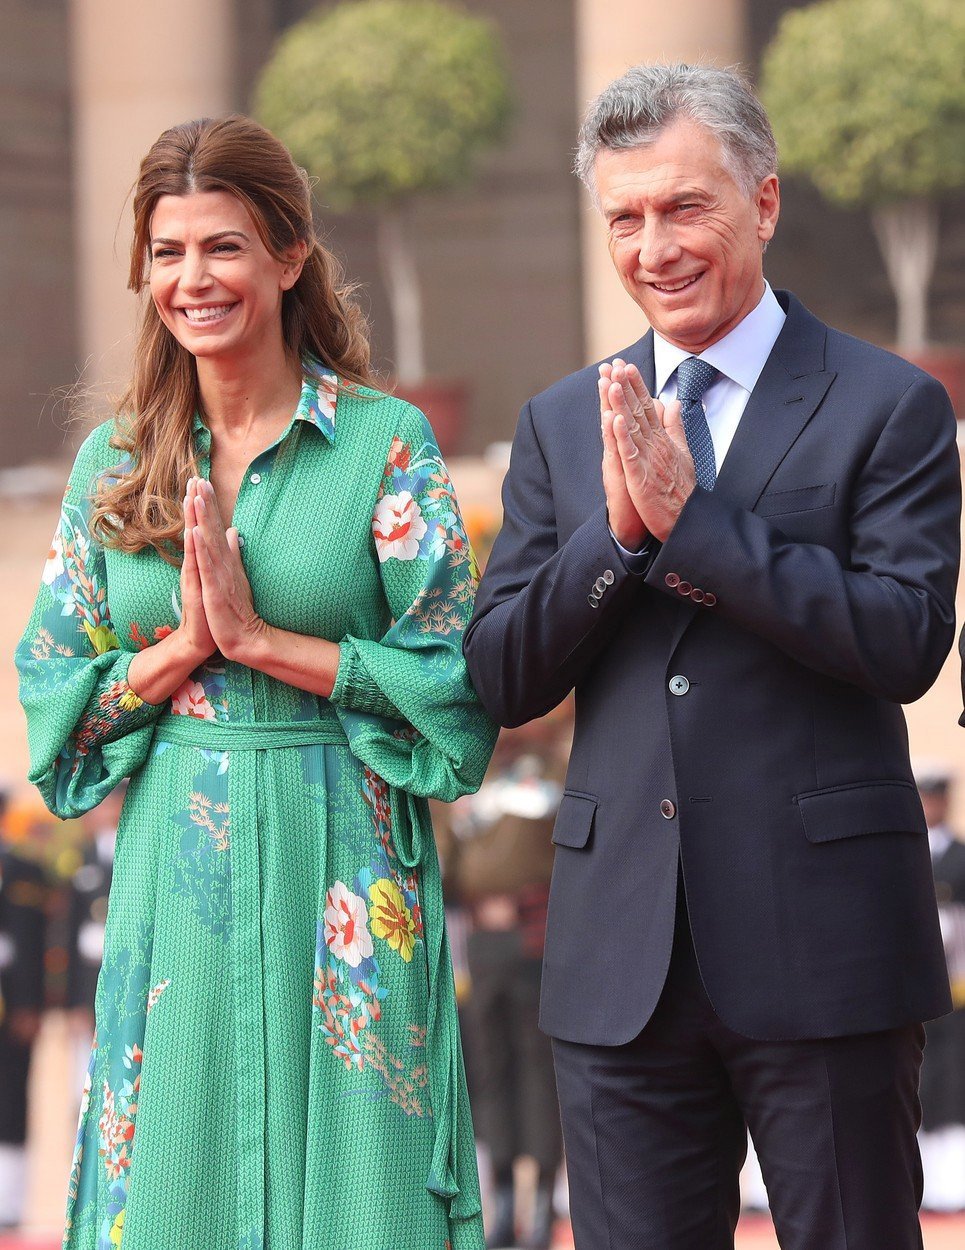 Juliana Awada je první dámou Argentiny, na fotce je po boku svého manžela.